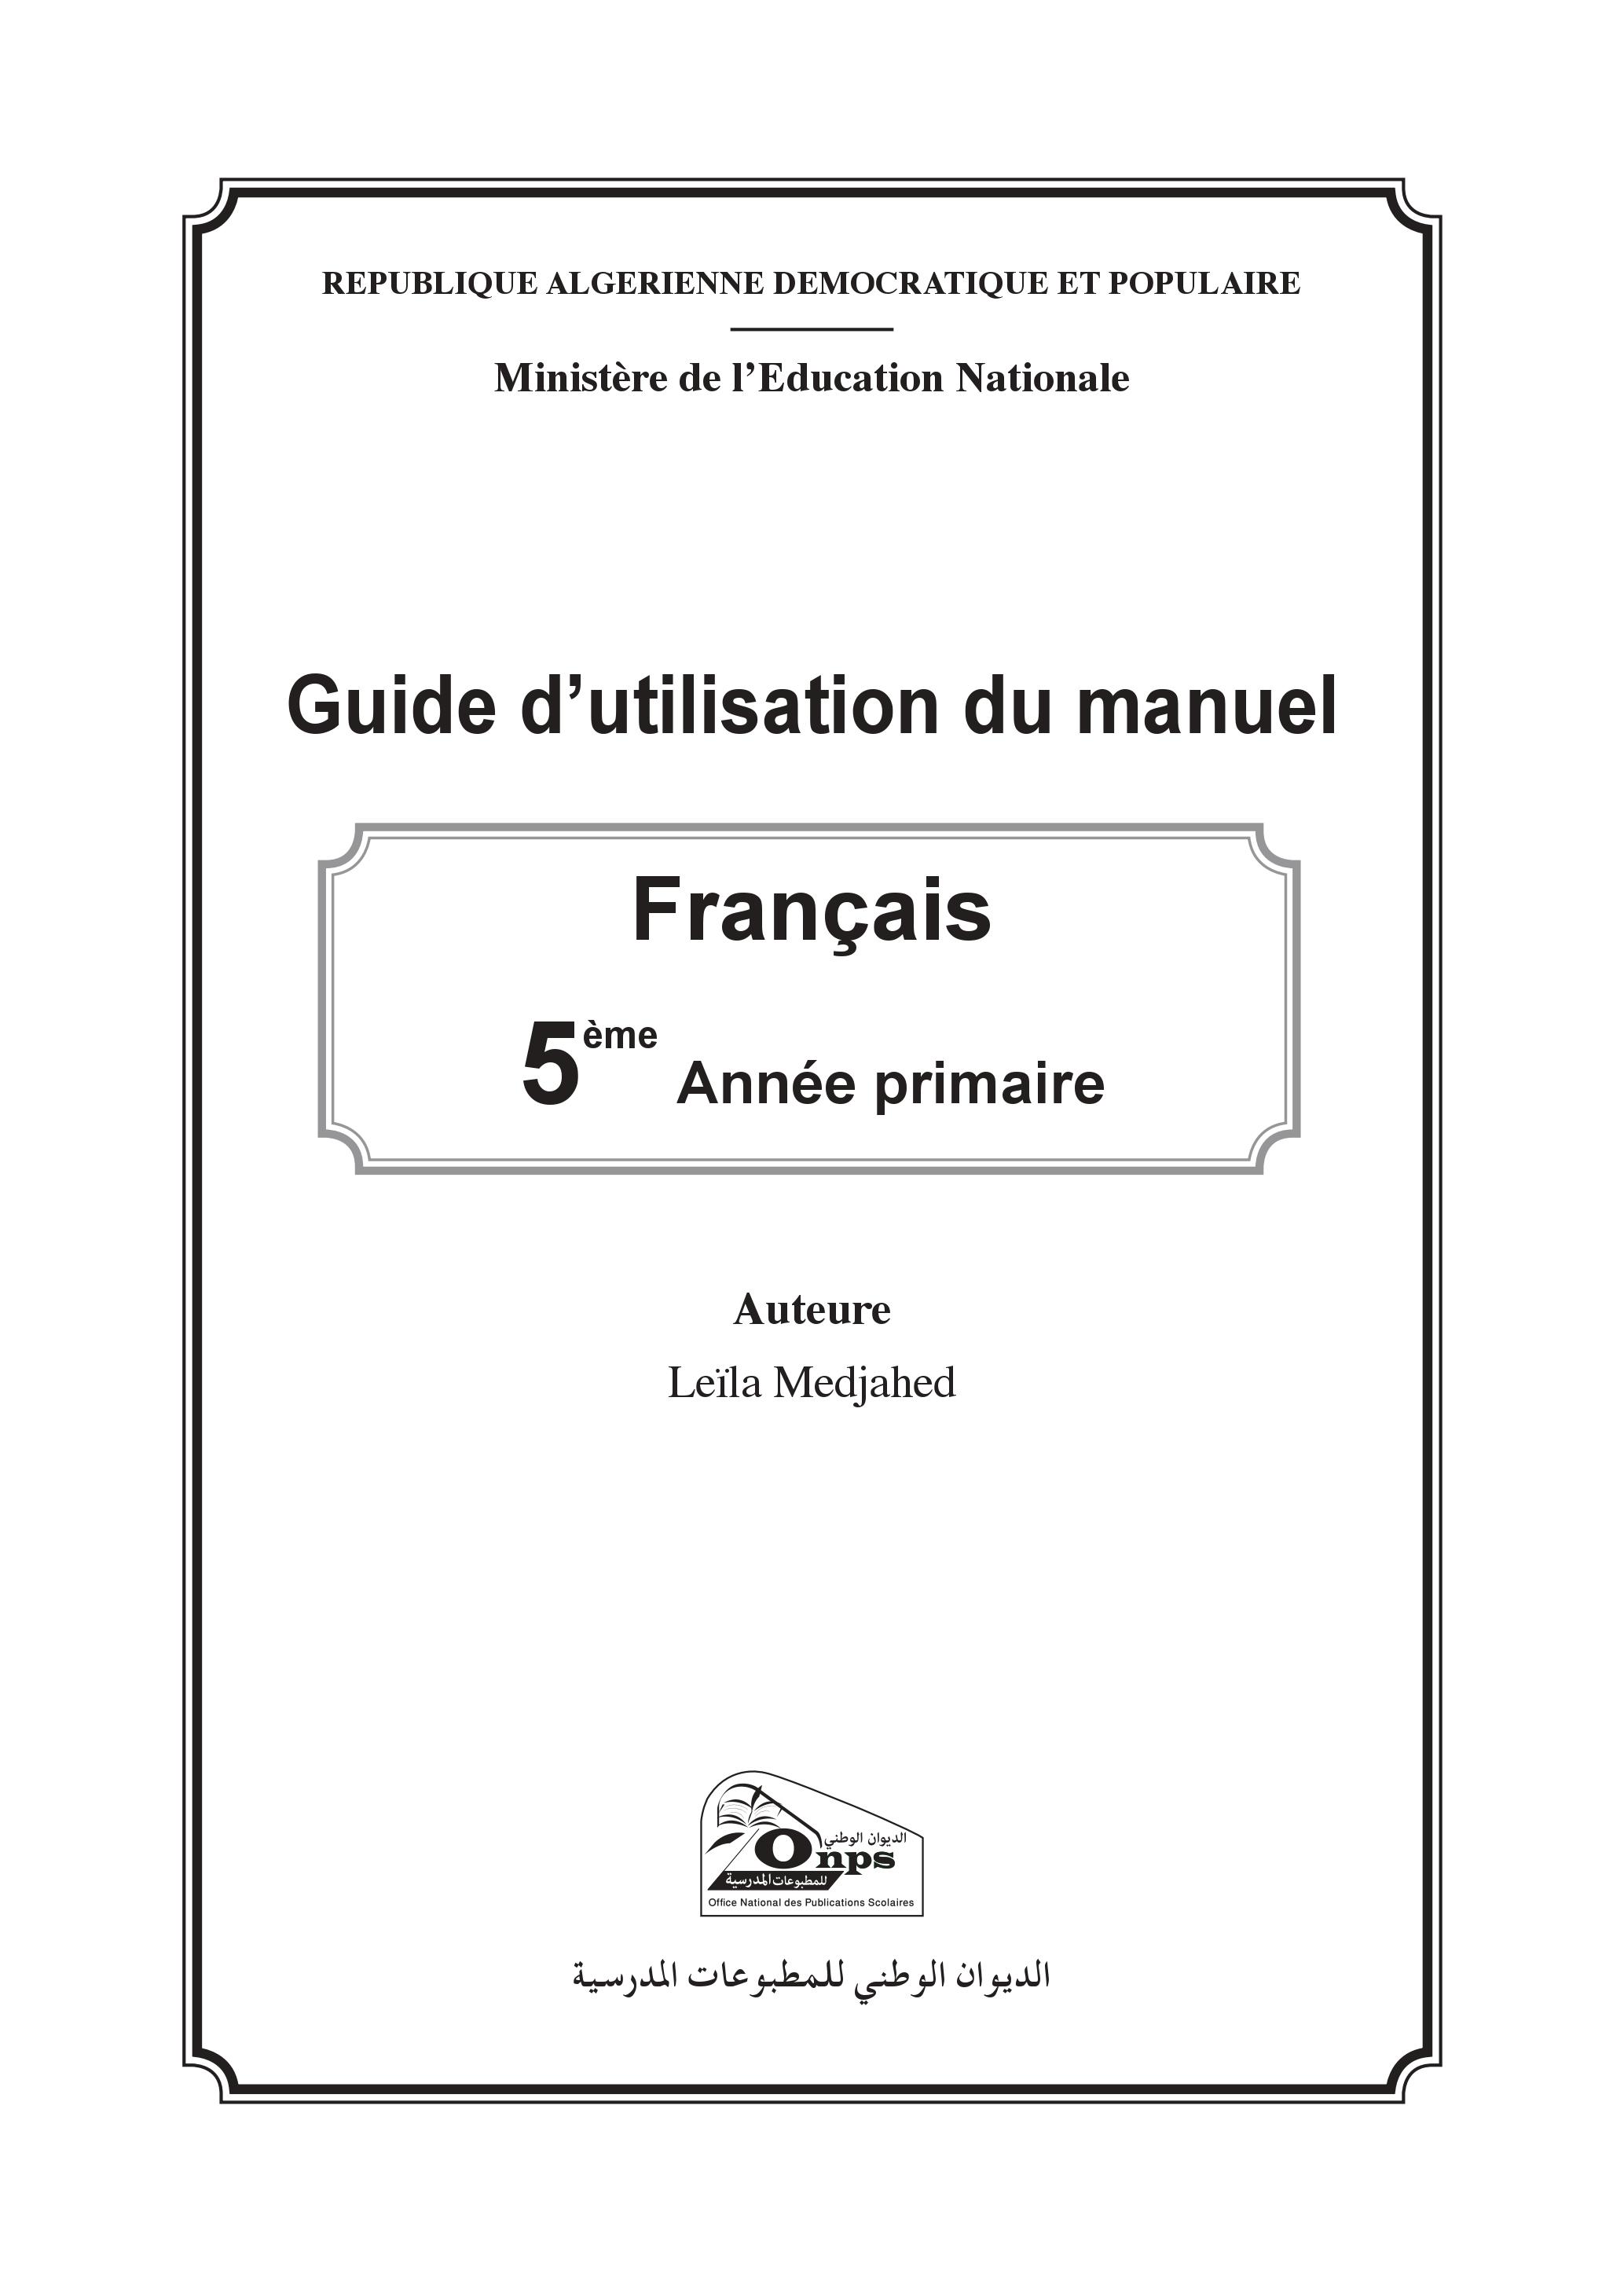 دليل استخدام كتاب اللغة الفرنسية  P_1343pev2s1